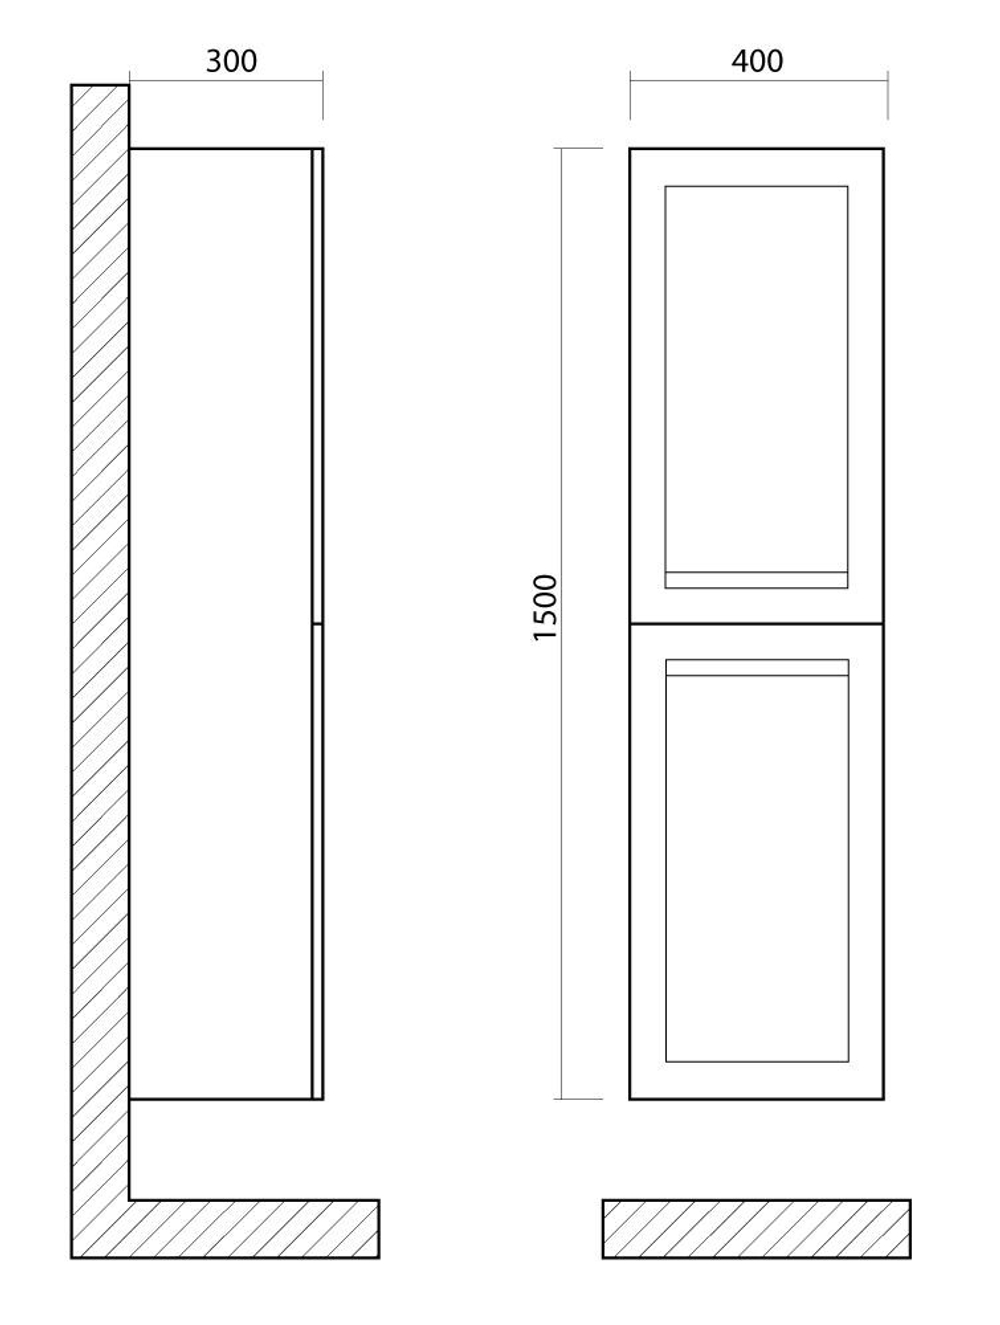 PLATINO  Шкаф подвесной с двумя распашными дверцами, Капучино матовый , 400x300x1500, AM-Platino-1500-2A-SO-CM